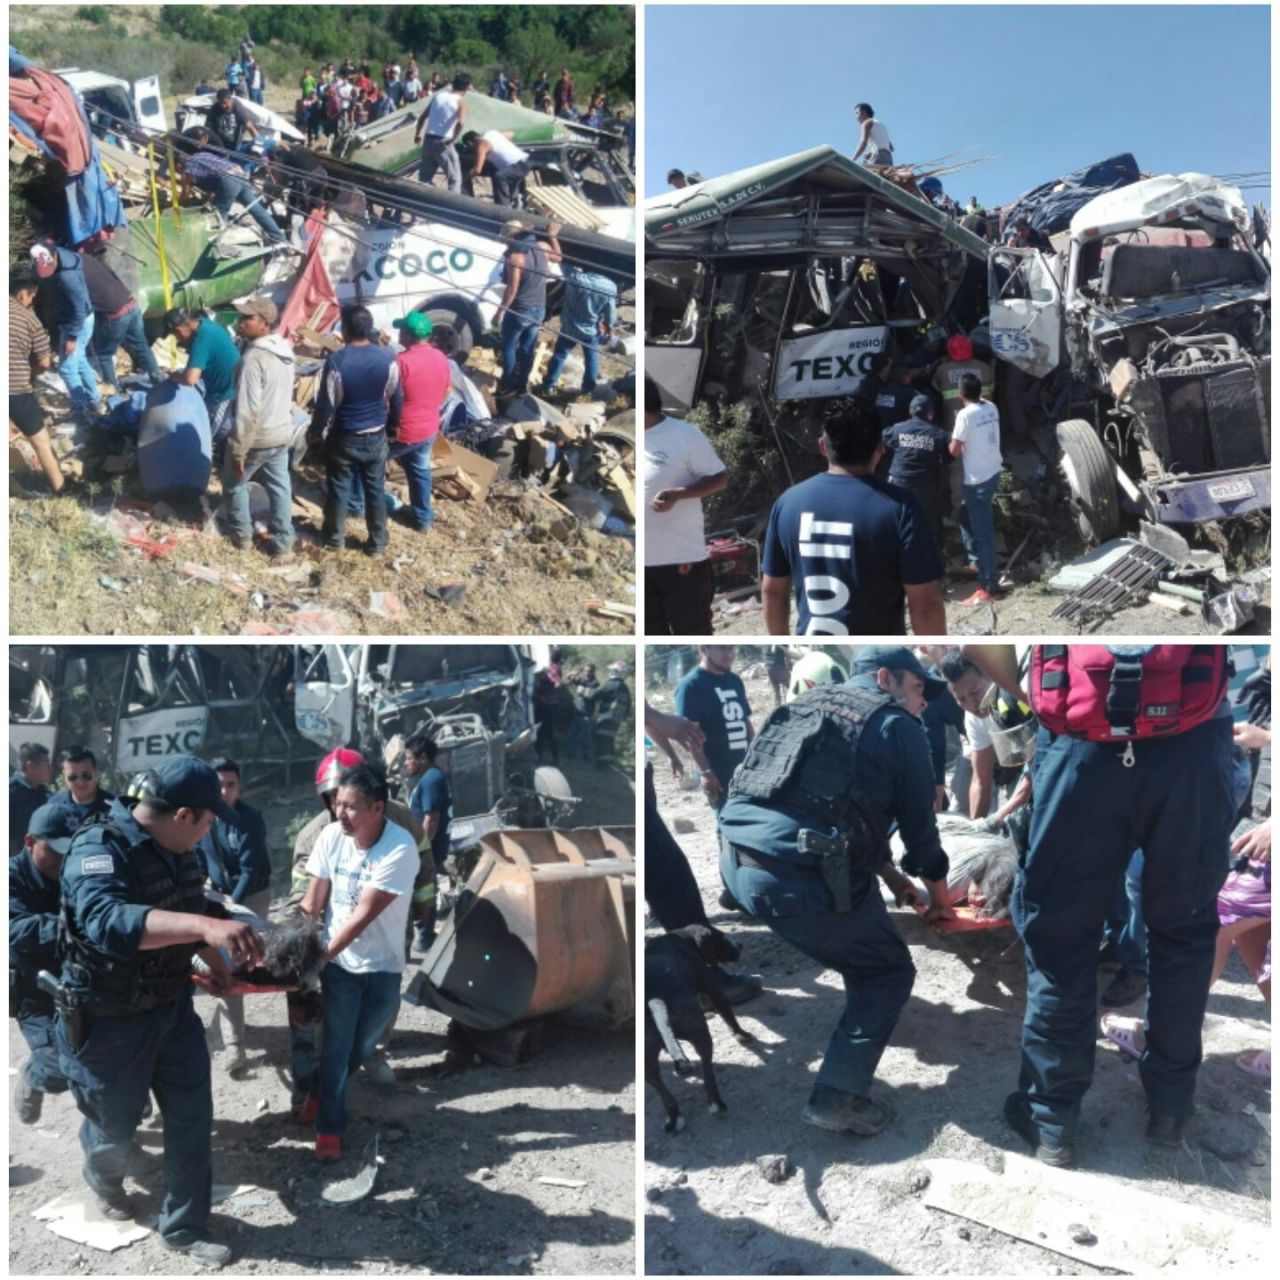  
# Choque deja 11 muertos en la carretera Texcoco Calpulalpan